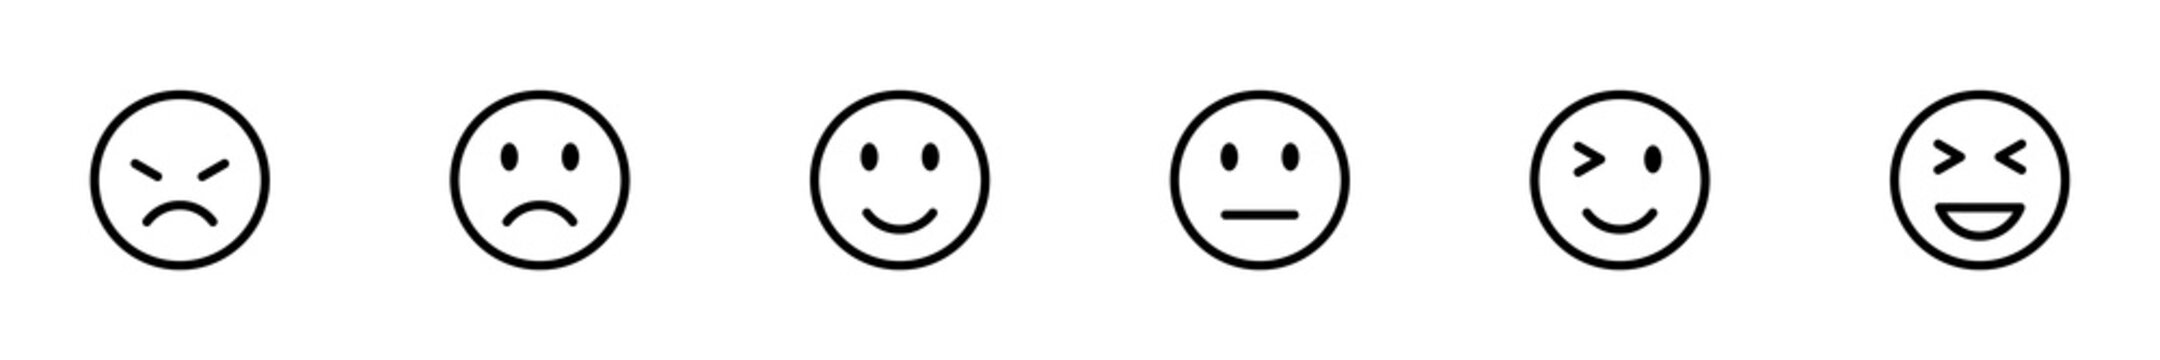 Conjunto de iconos emoticones. Caritas de reacciones. Concepto de reacciones de chat, emoji